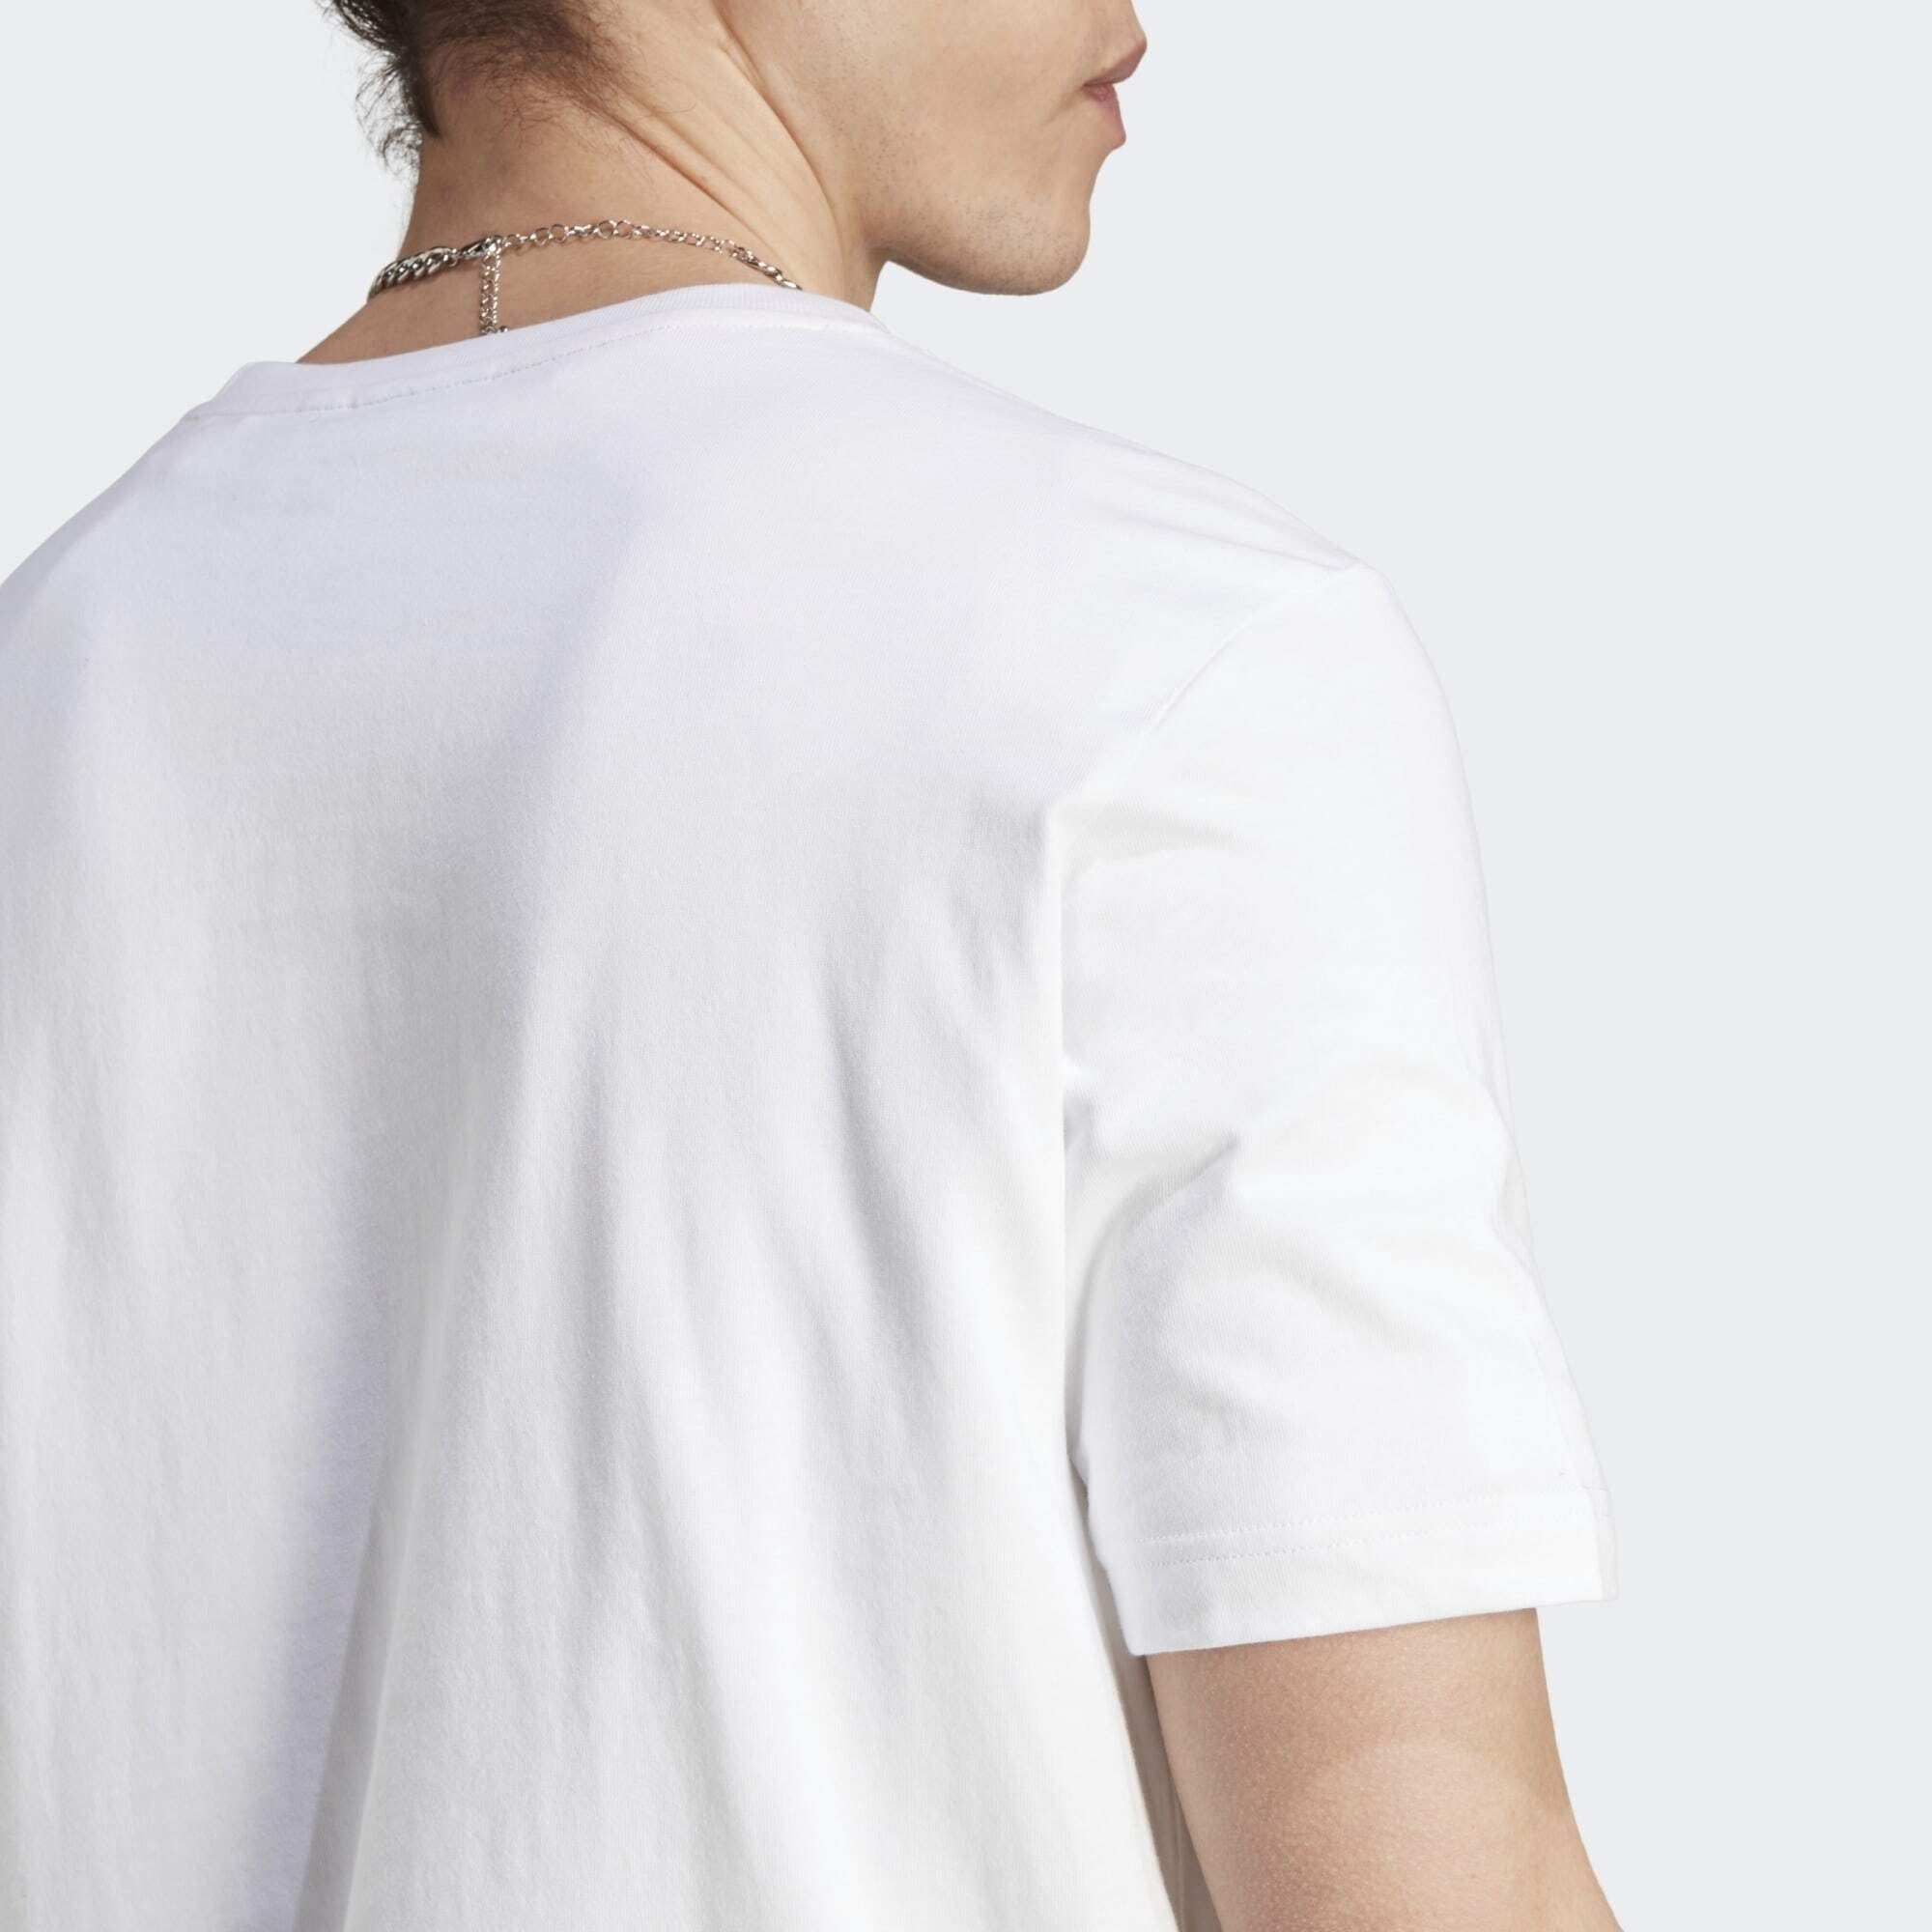 CAMO adidas T-Shirt GRAPHICS TONGUE T-SHIRT White Originals LABEL